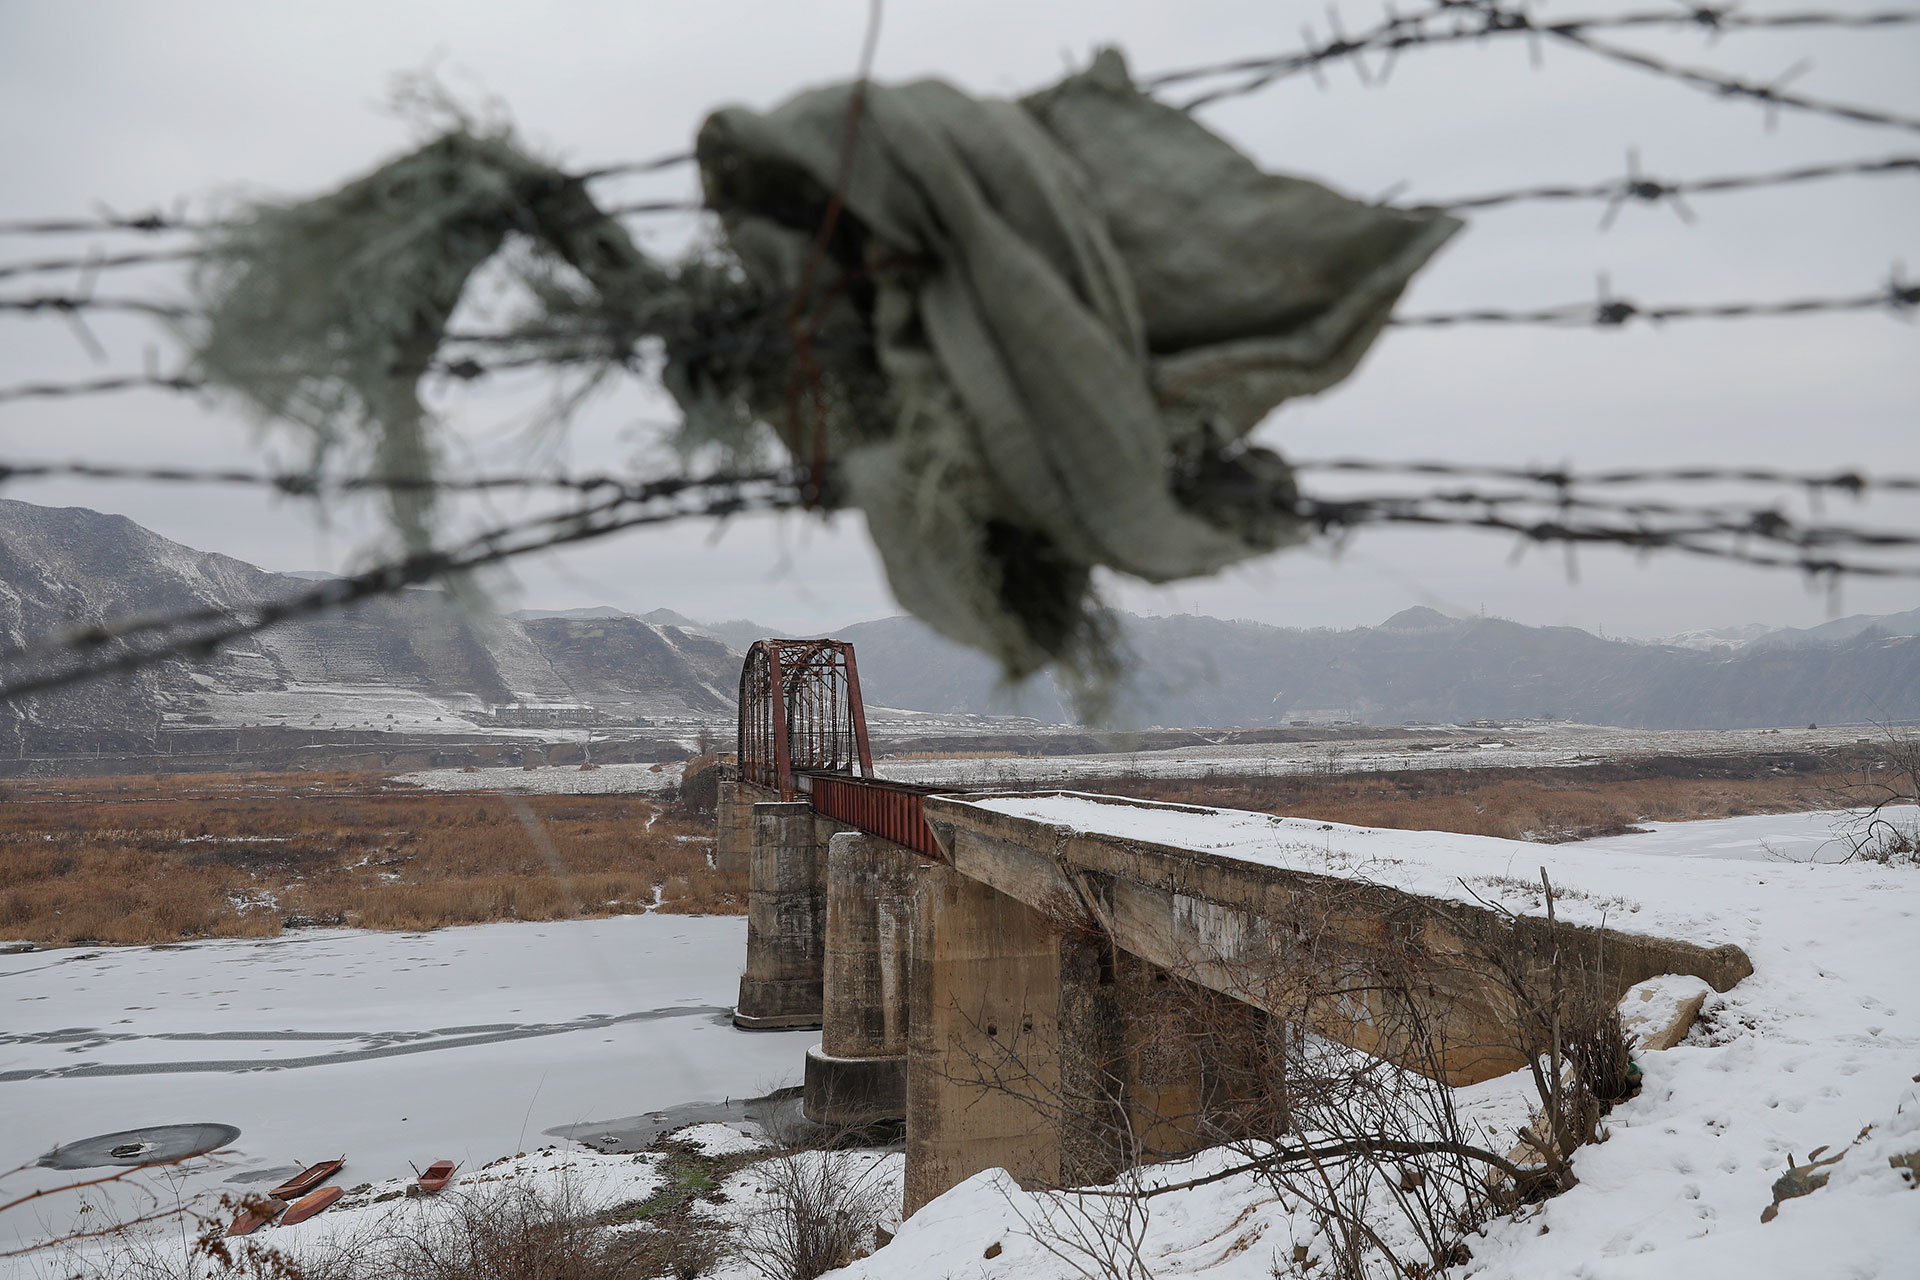 یک نگهبان مرزی در کره شمالی در حالی که سعی داشت همراه نامزد خود از طریق مرز فرار کند به درون رودخانه یخ زده افتاده و جان باخت.